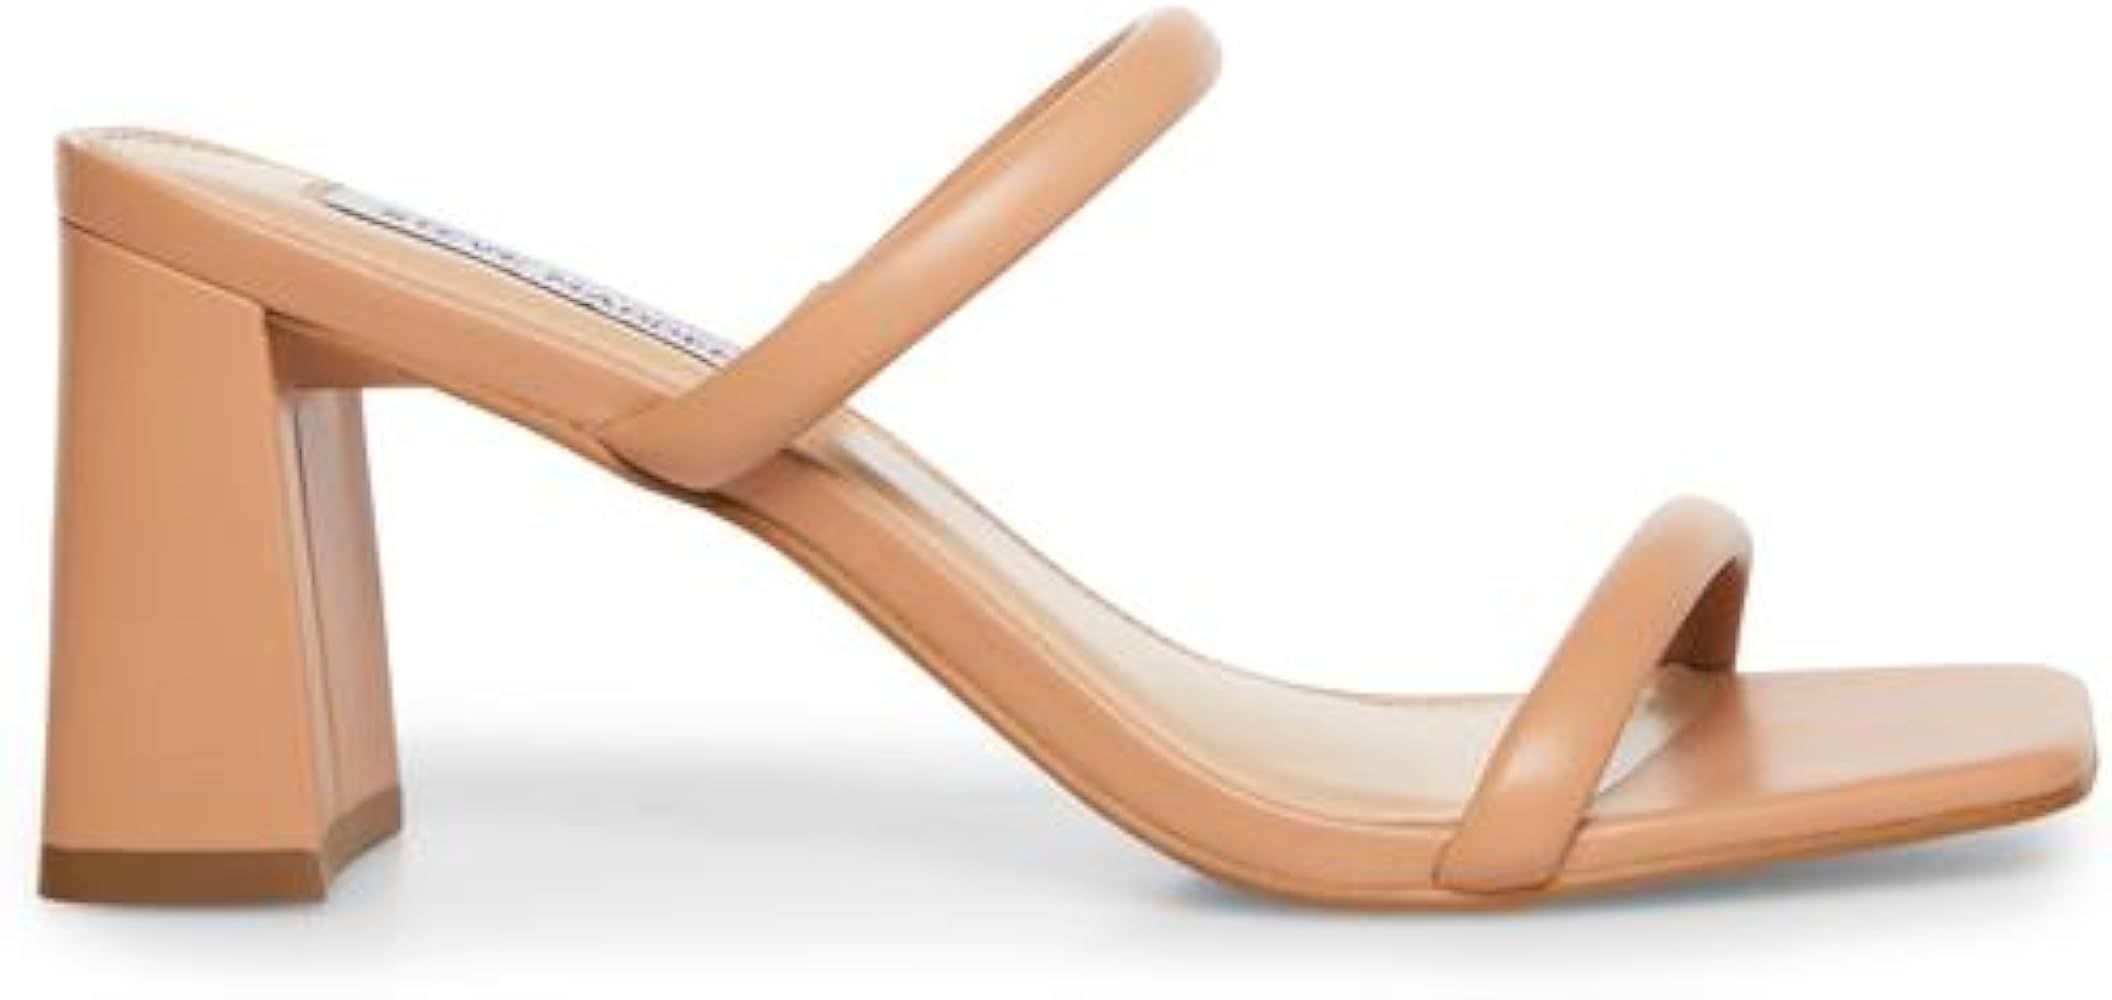 Steve Madden Women's Lilah Heeled Sandal | Amazon (US)